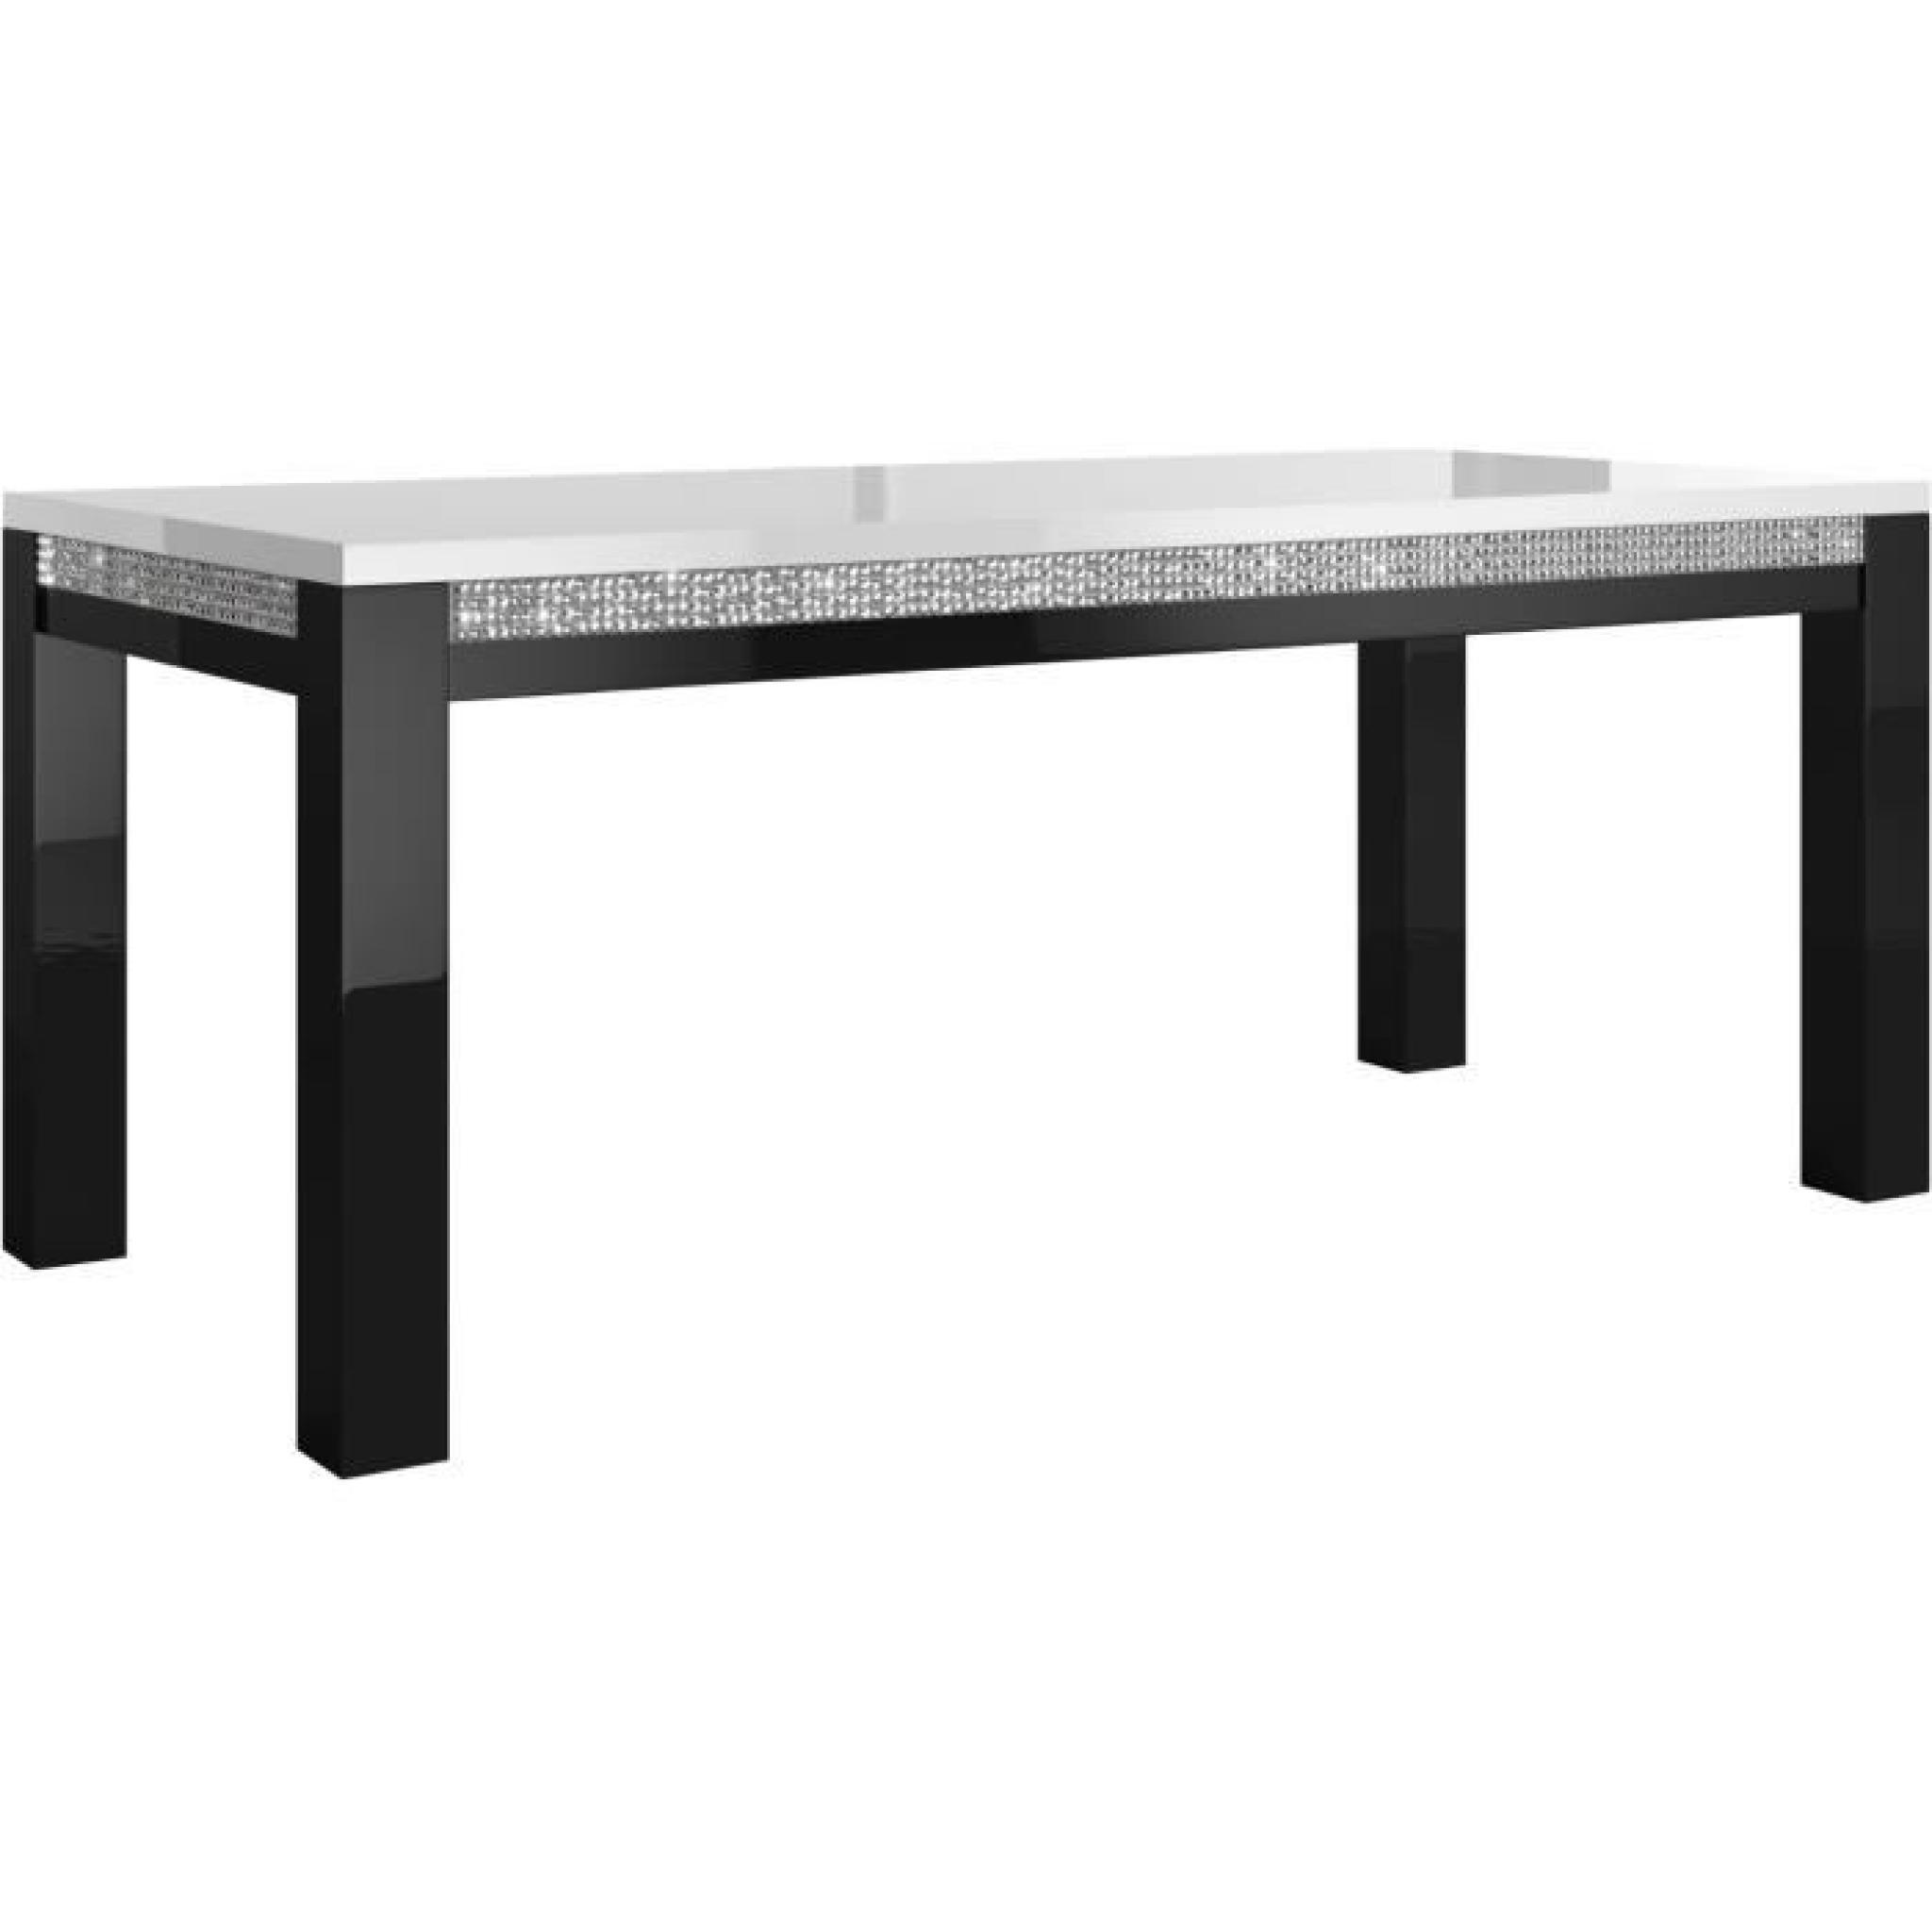 Table à manger 190 cm + 4 chaises ultra design noir et blanc modele Prestige pas cher